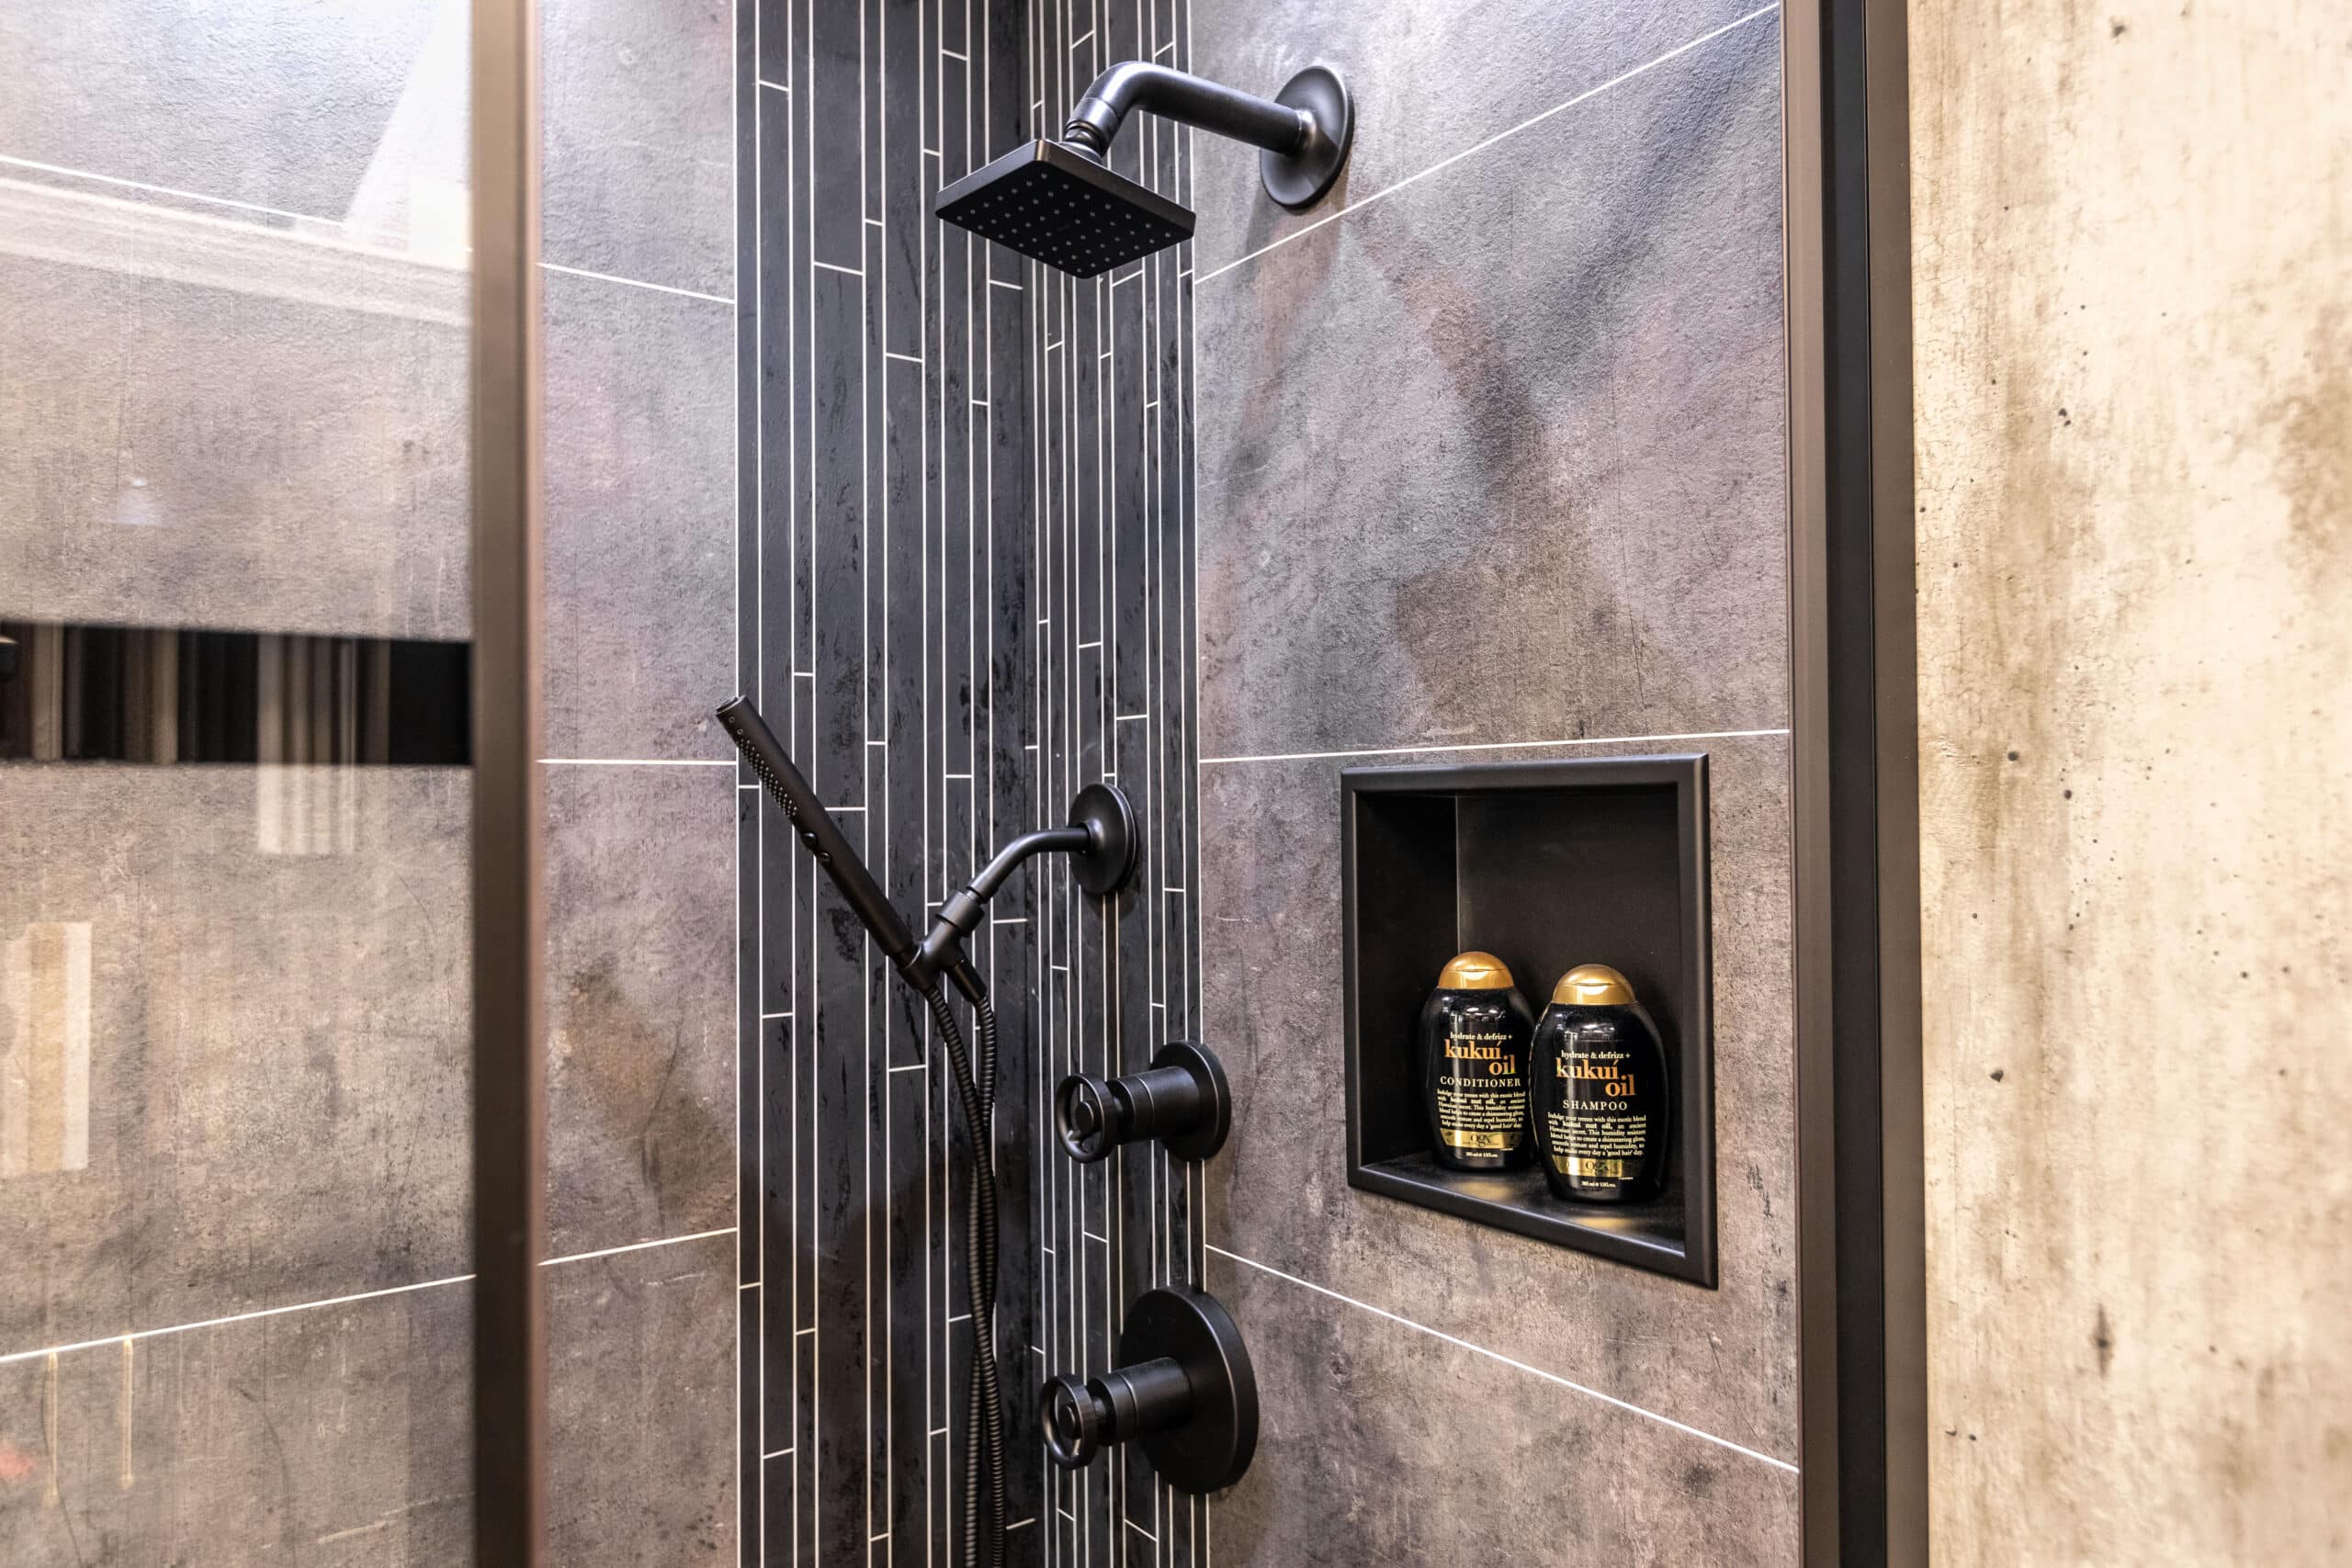 A modern shower with a sleek glass door